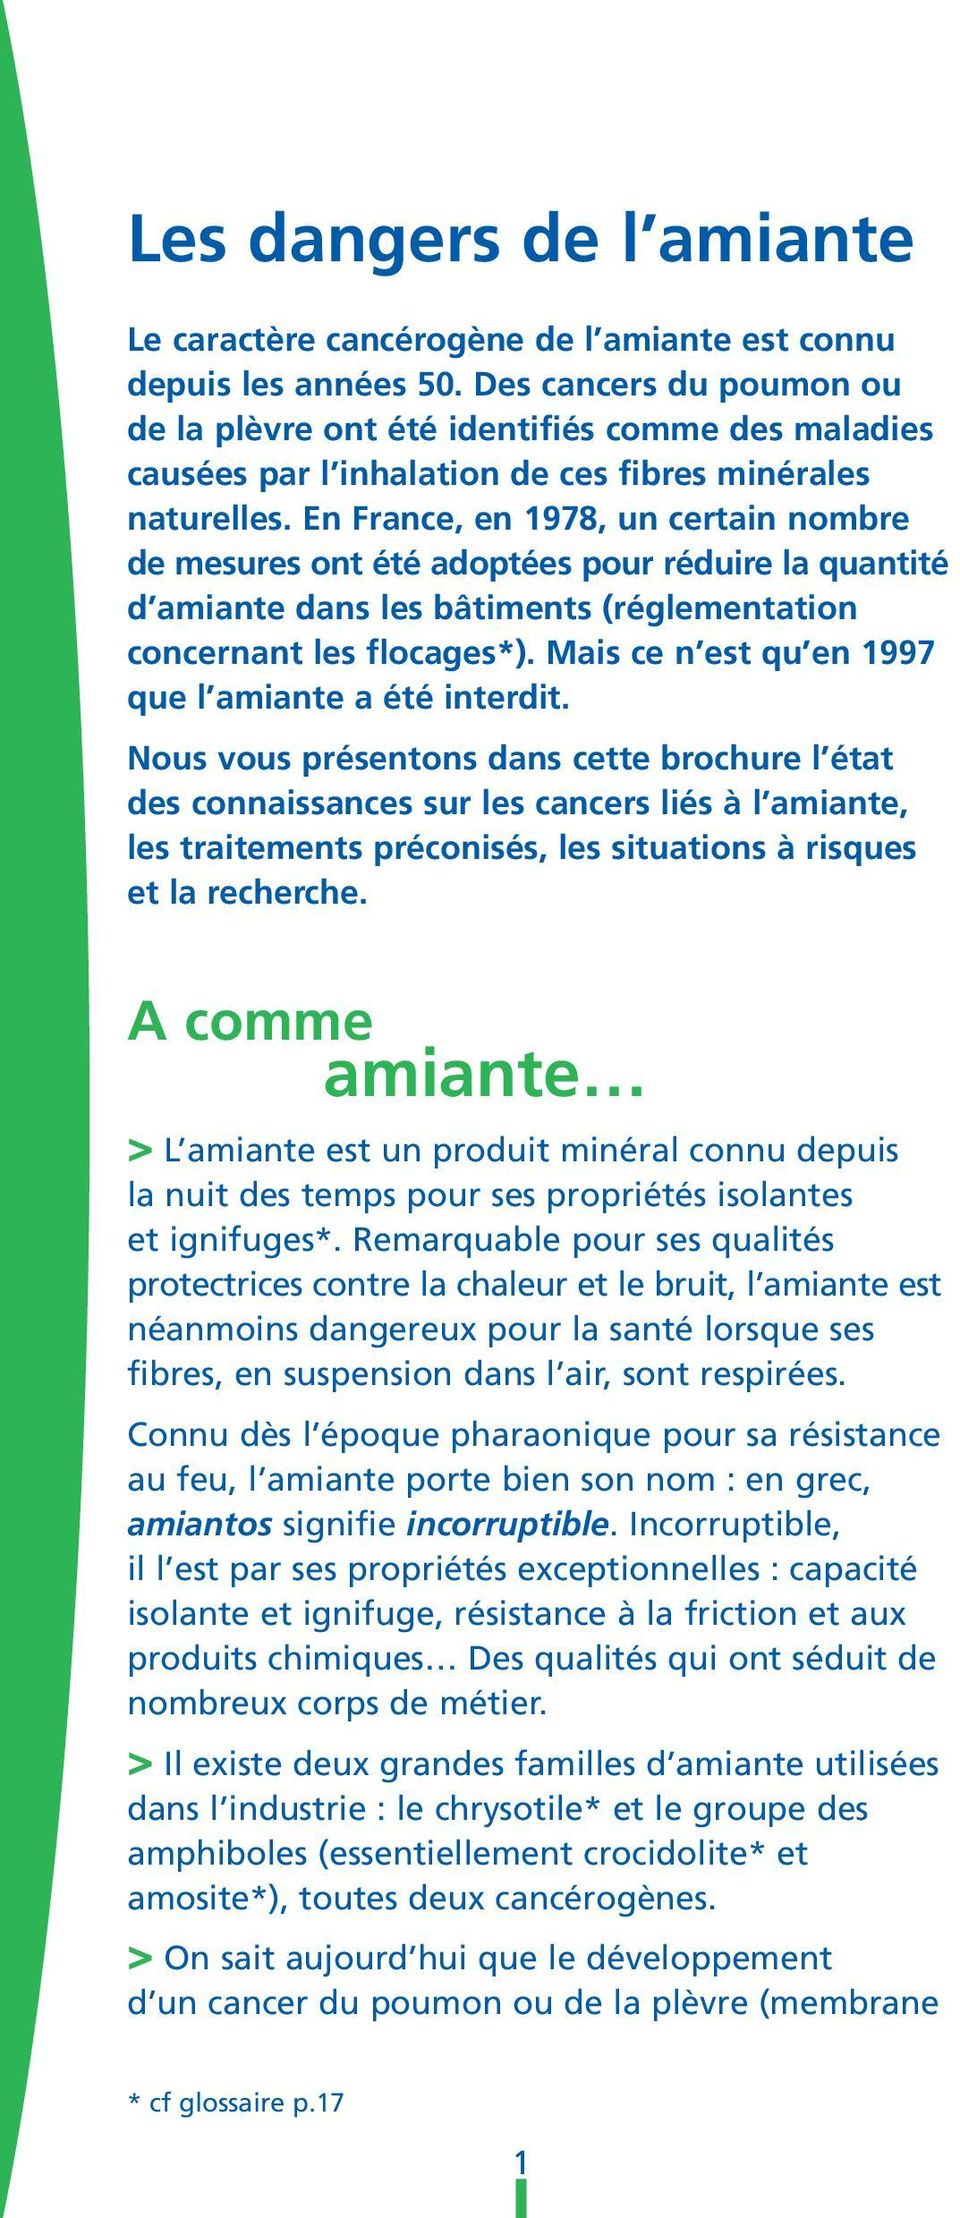 En France, en 1978, un certain nombre de mesures ont été adoptées pour réduire la quantité d amiante dans les bâtiments (réglementation concernant les flocages*).